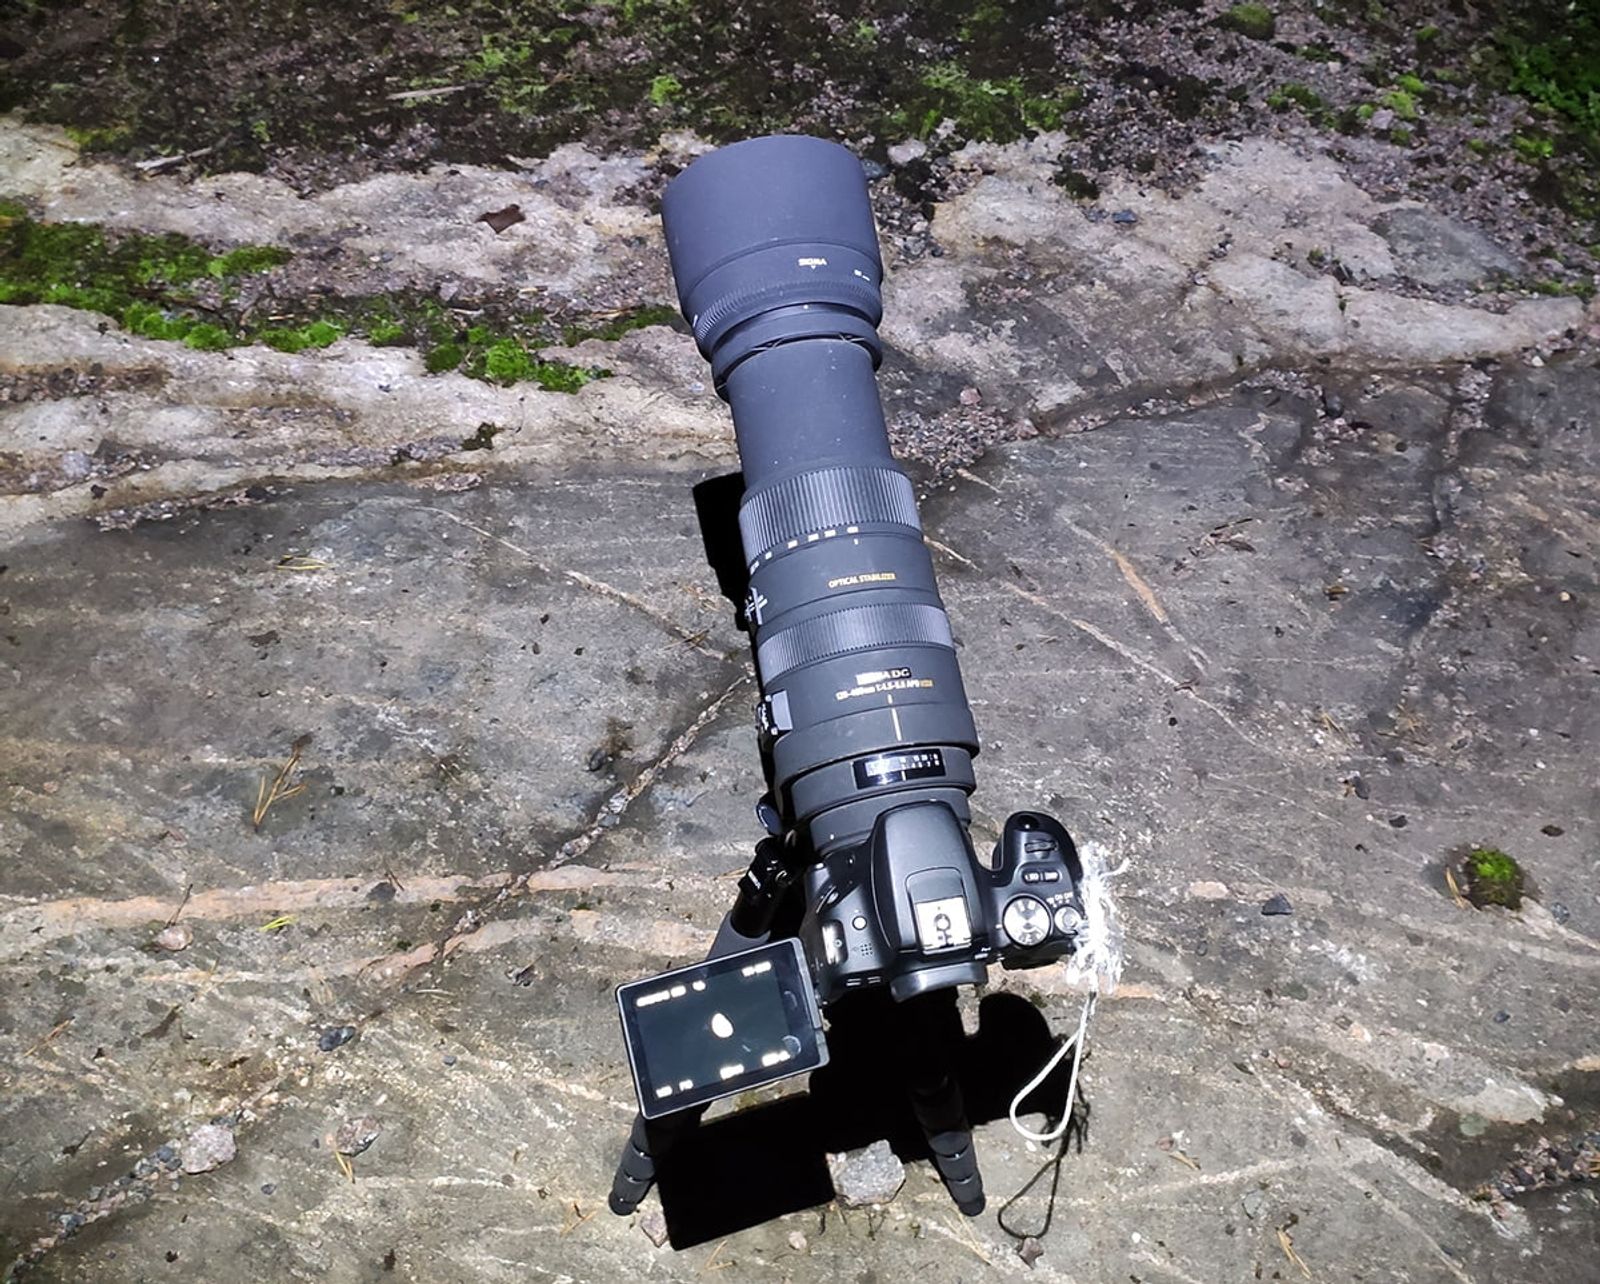 Kamera ja Sigma 120-400mm -objektiivi